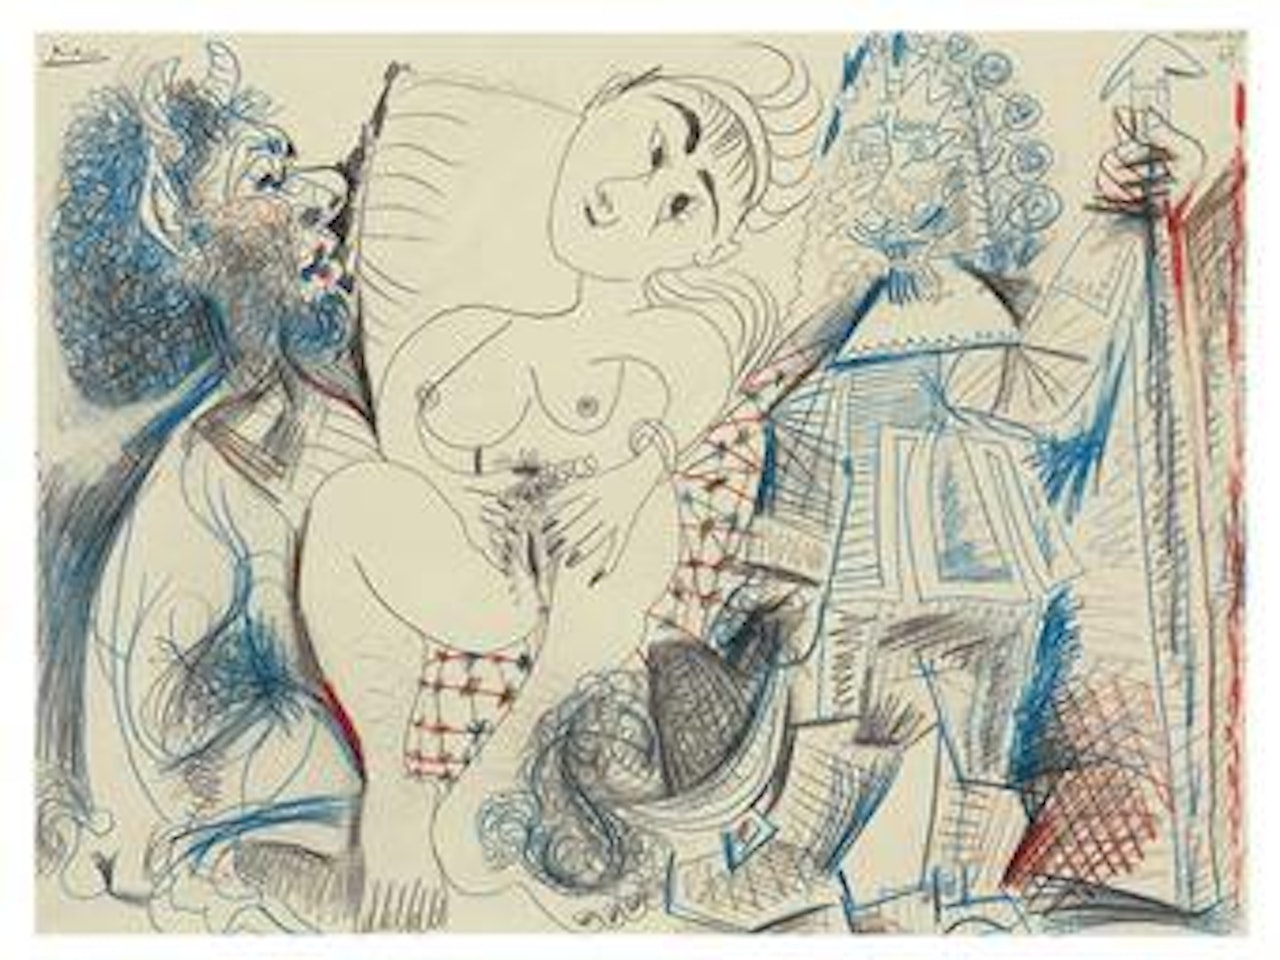 Faune, femme nu et mousquetaire by Pablo Picasso